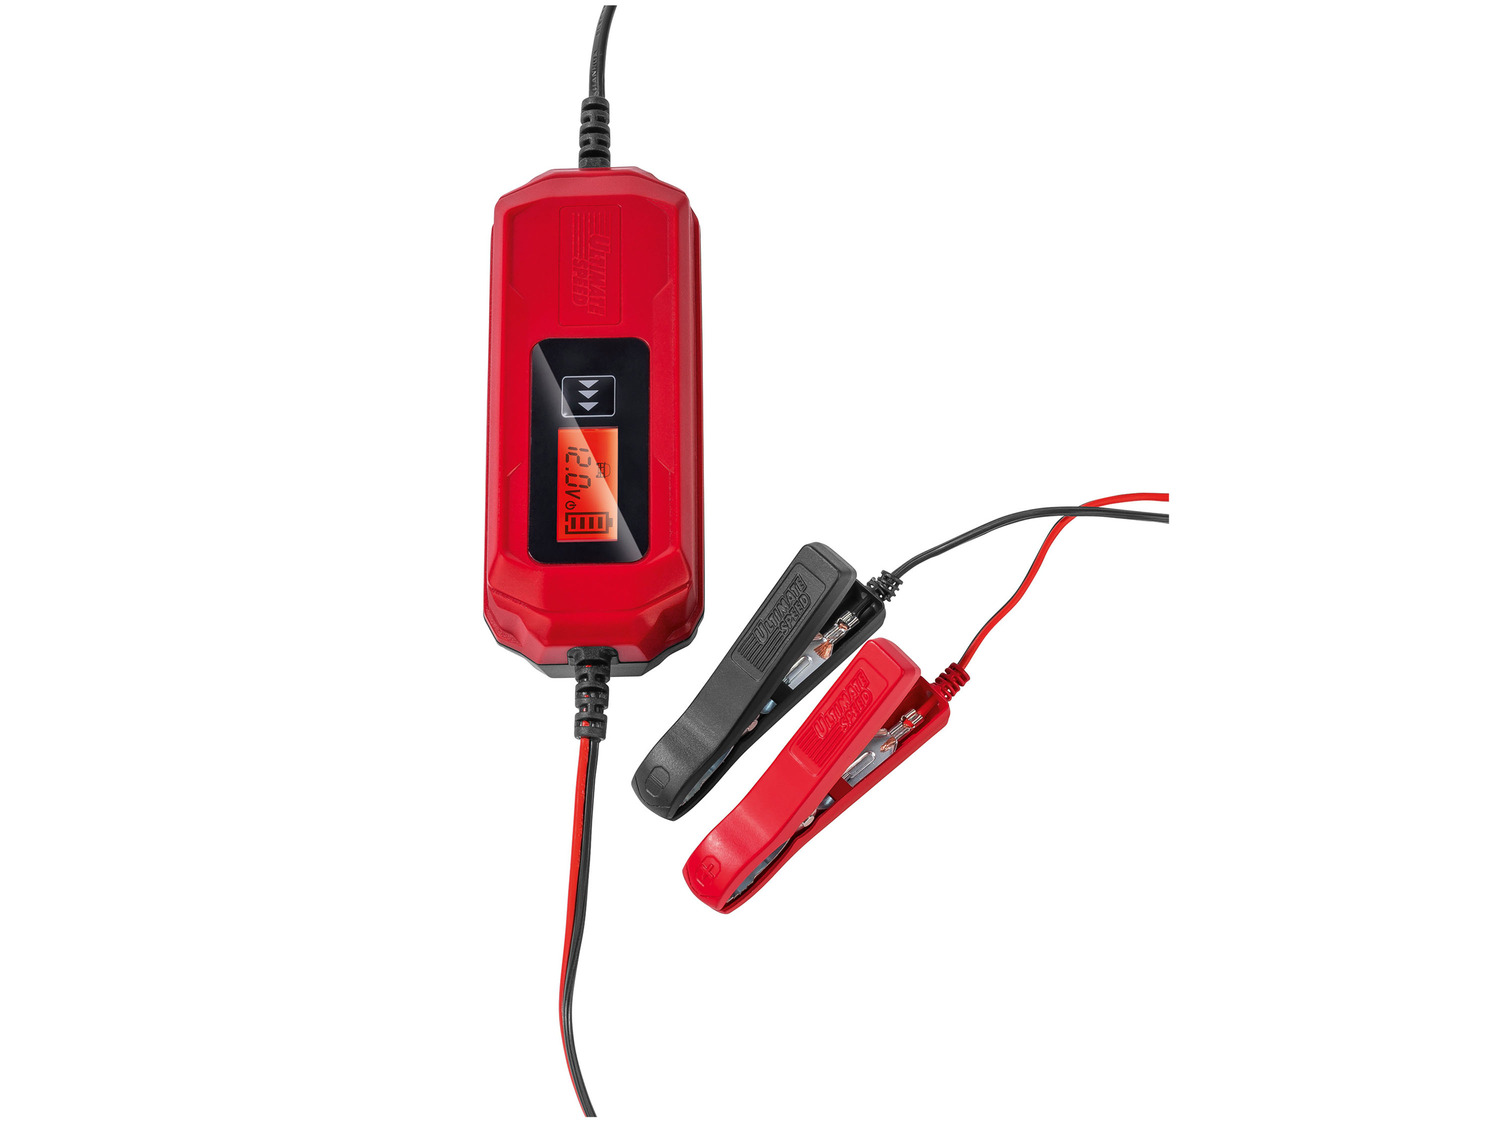  Chargeur de batterie de voiture ULGD 3.8 B1 pour batteries de  moto et de voiture 6 V/12 V